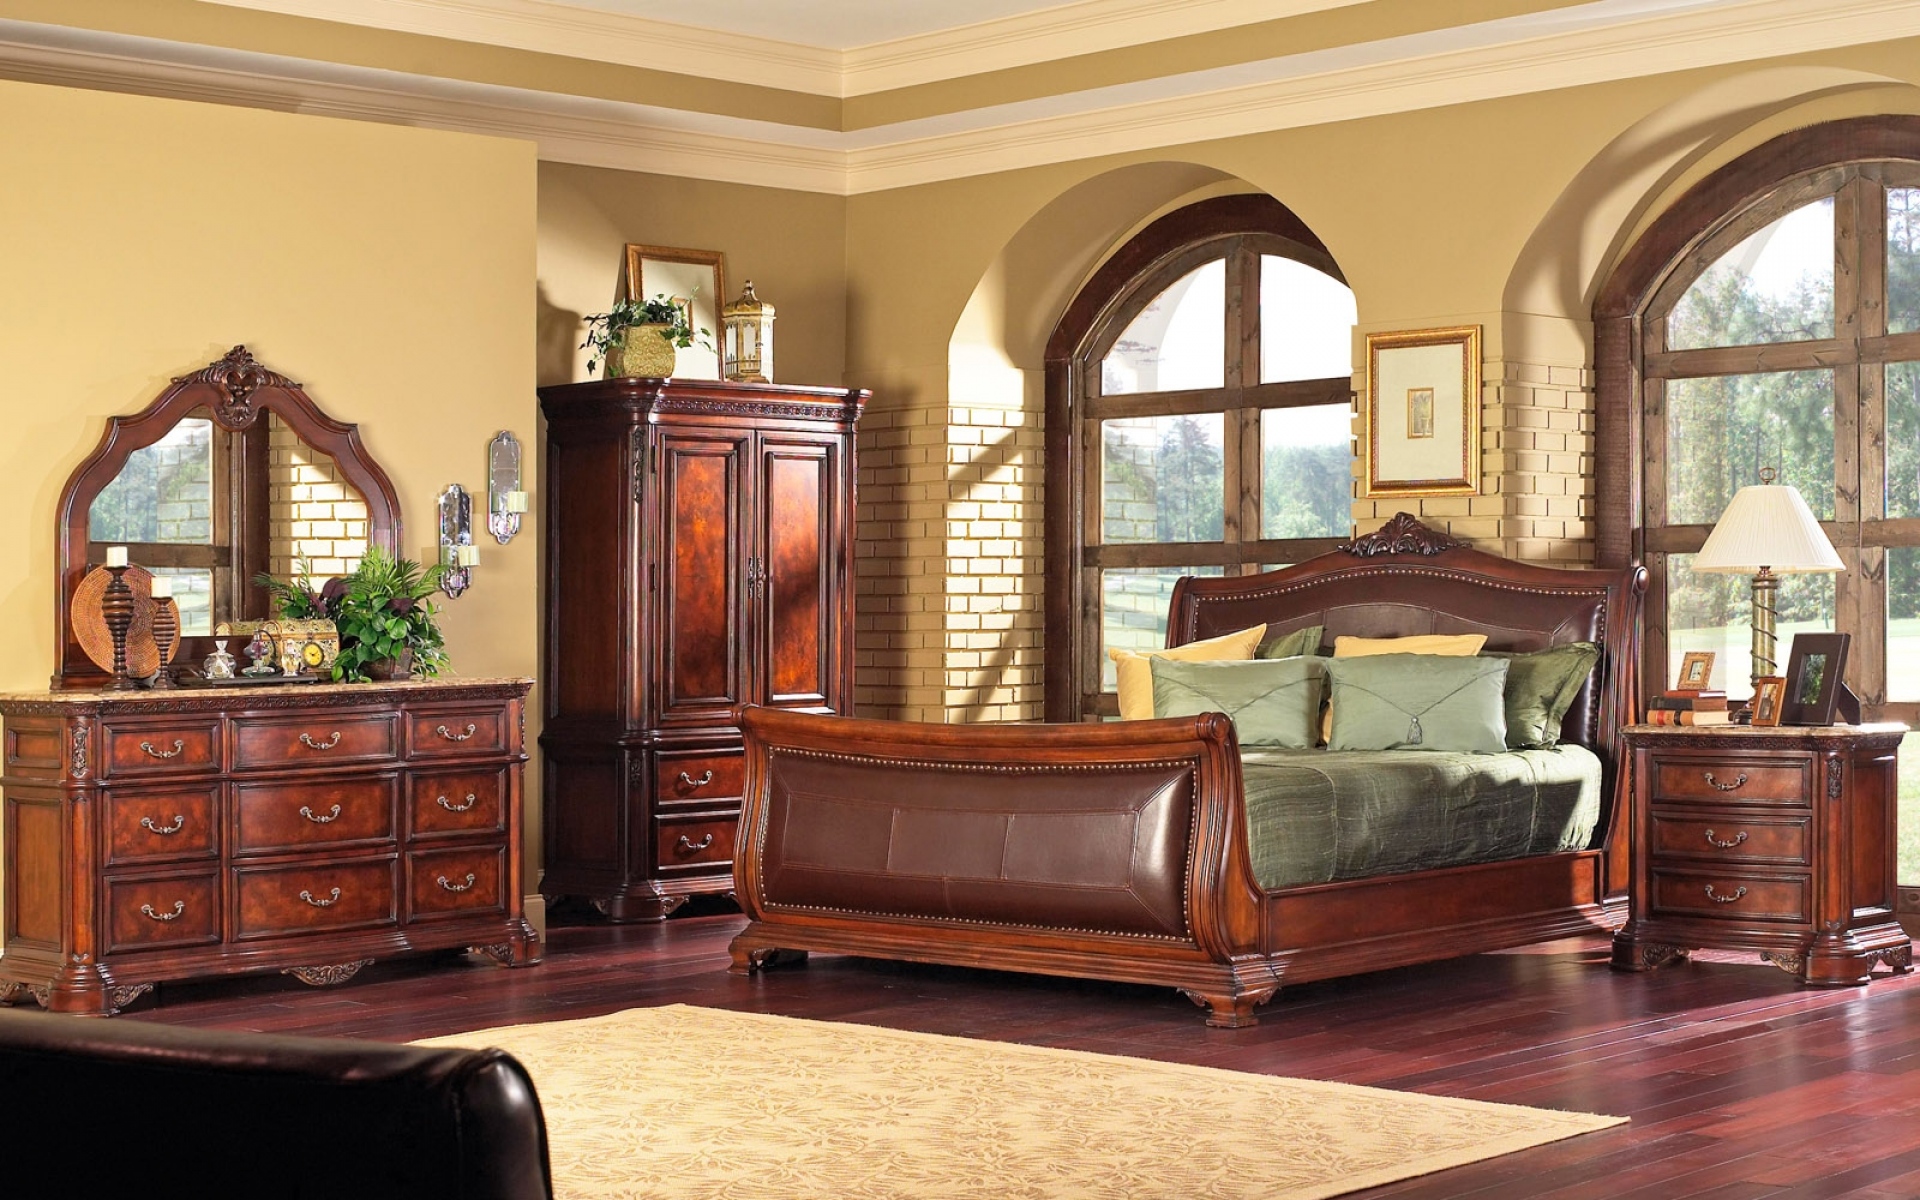 Wooden мебель. Спальня в старинном стиле. Красивая деревянная мебель в интерьере. Спальня из красного дерева. Комната с деревянной мебелью.